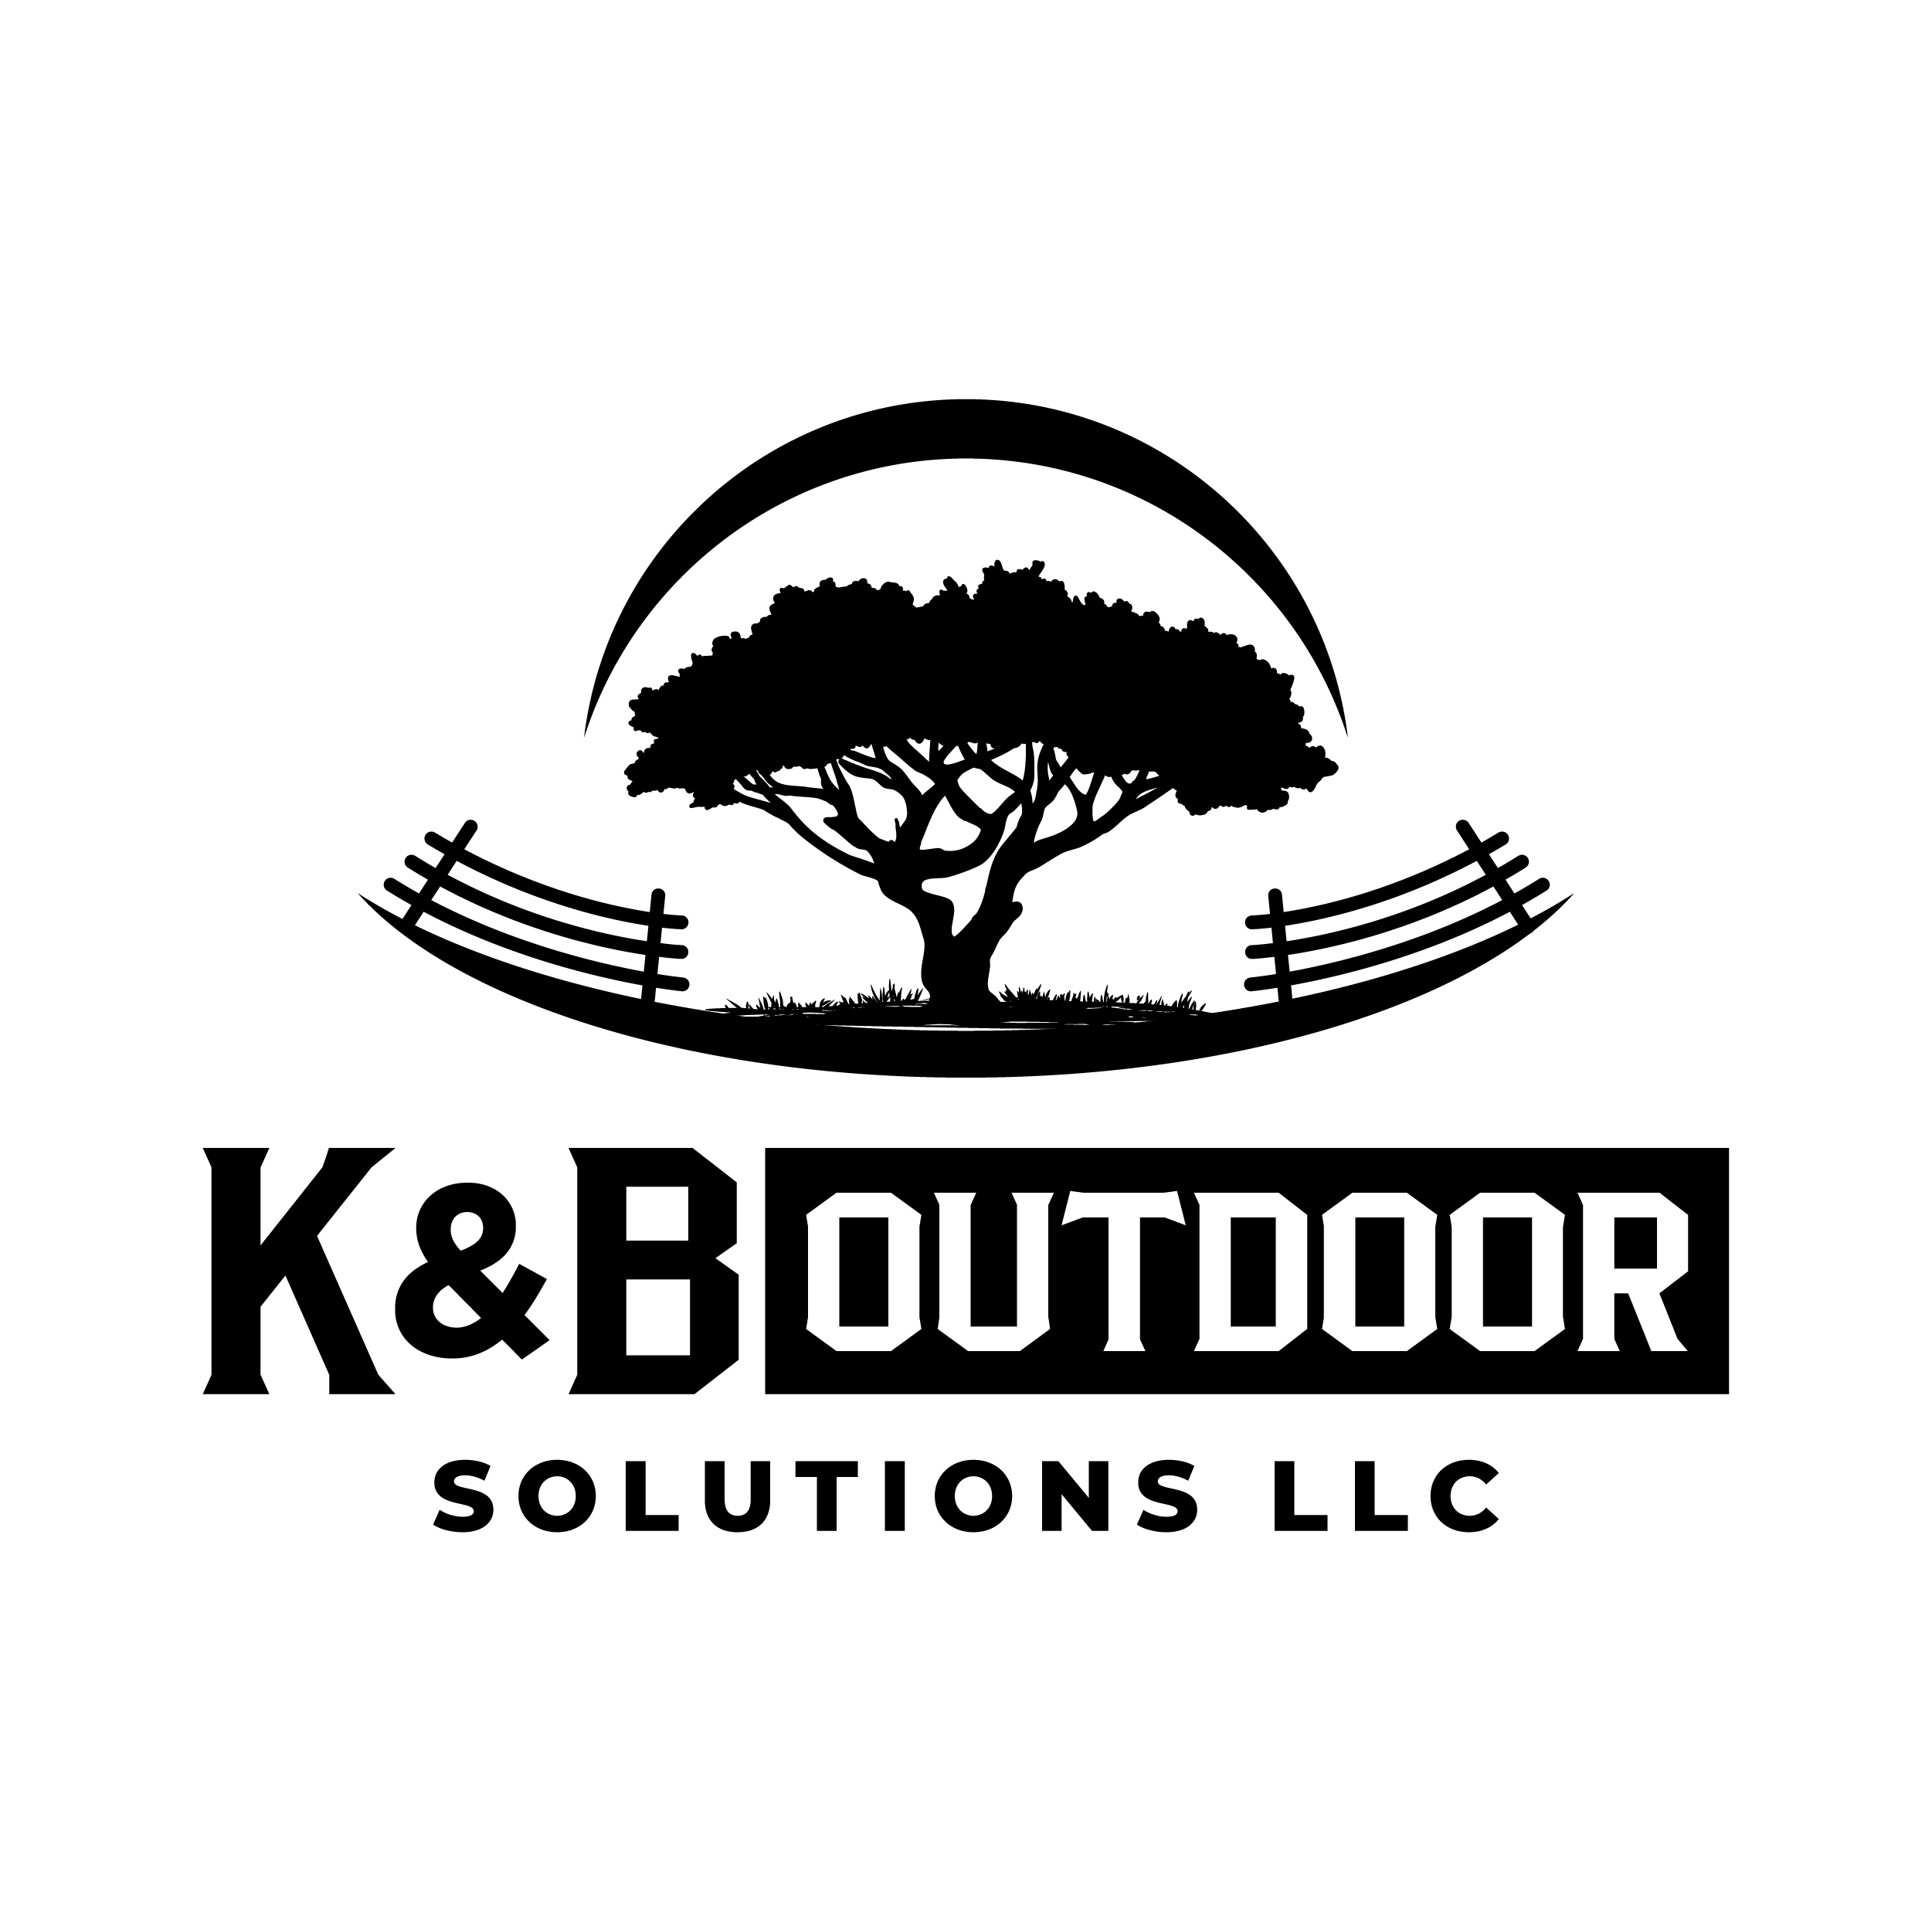 K&B Outdoor Solutions LLC Logo